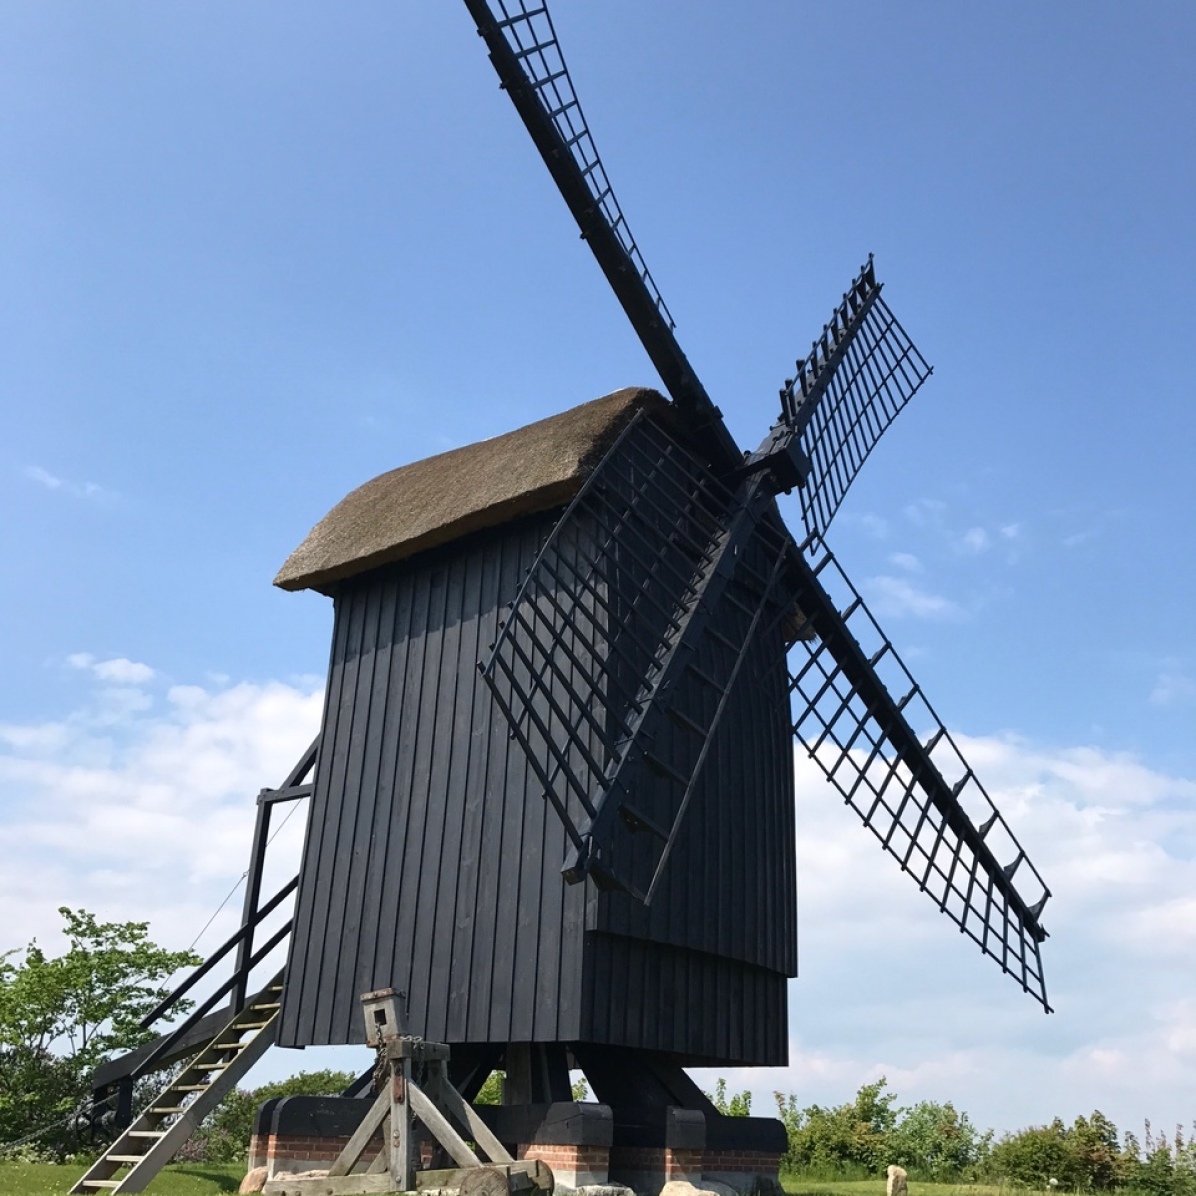 Die Brundby Stubmølle, eine der ältesten Mühlen in Dänemark